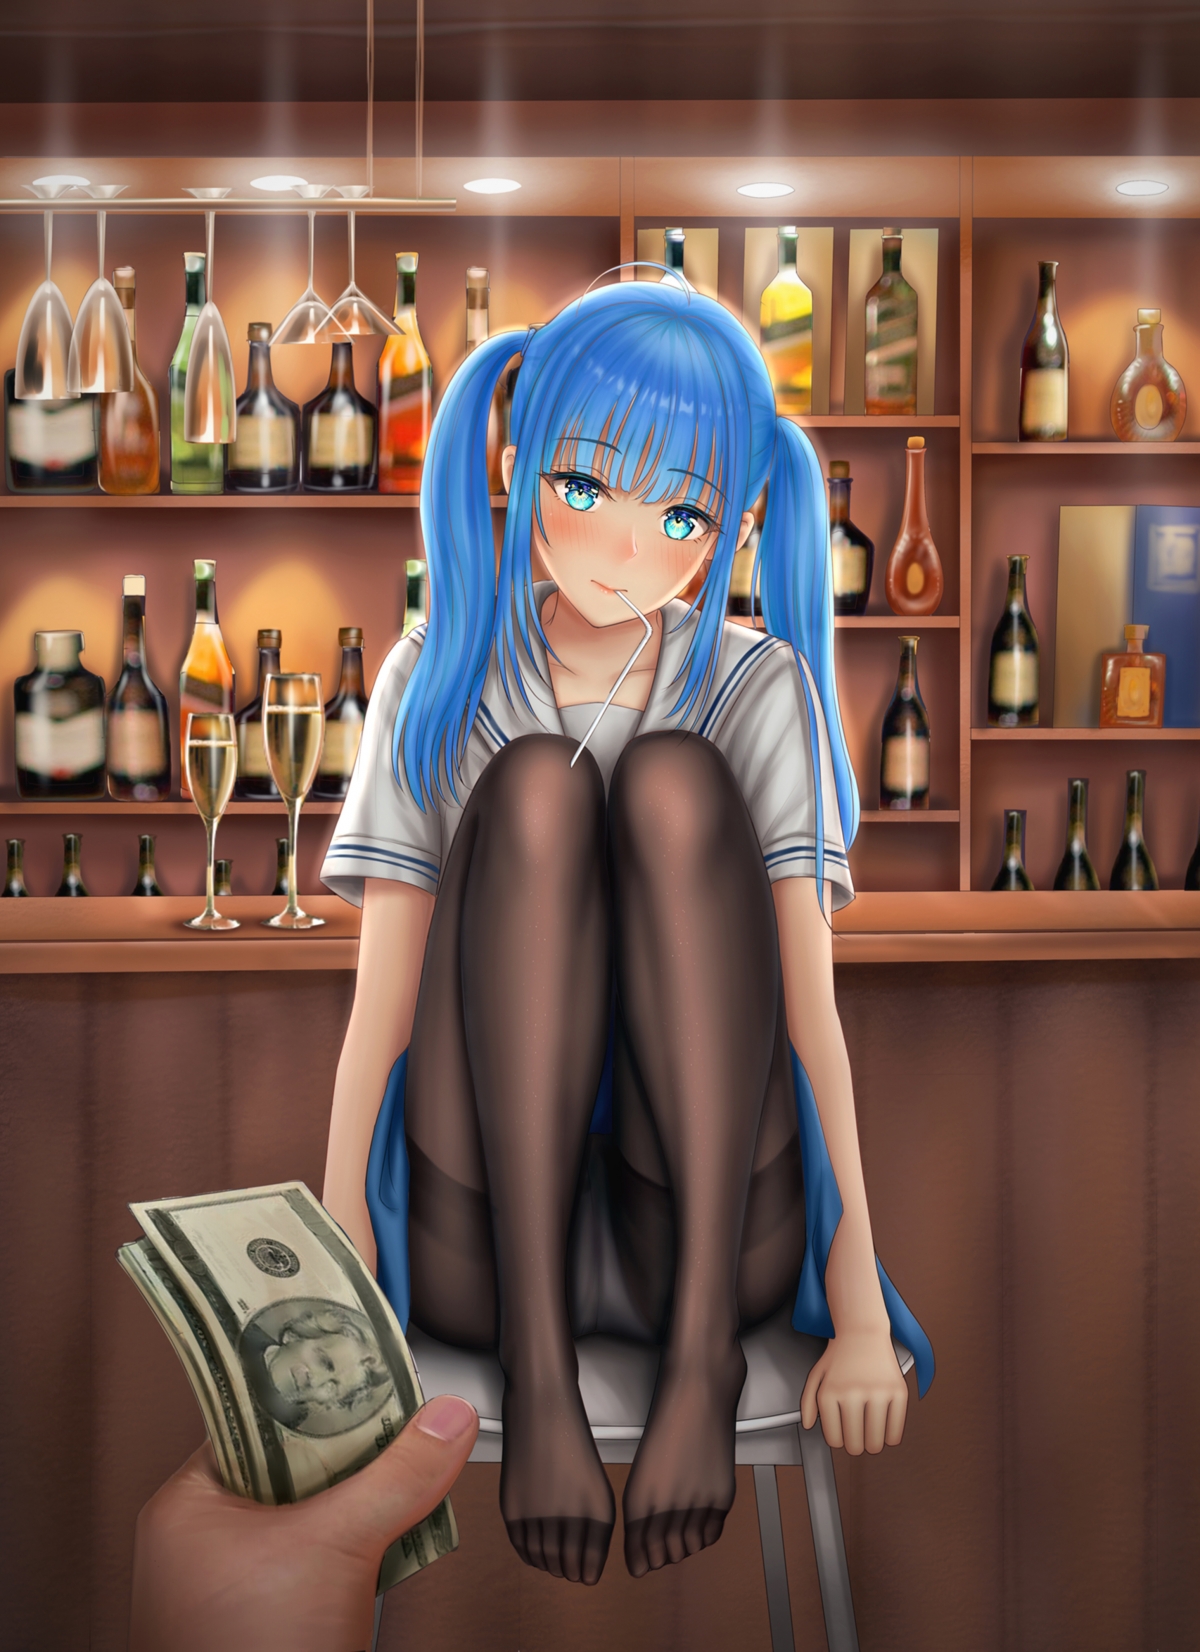 女子 女孩子 蓝色双马尾辫 丝袜 水手服制服 酒吧 4k全面屏手机壁纸